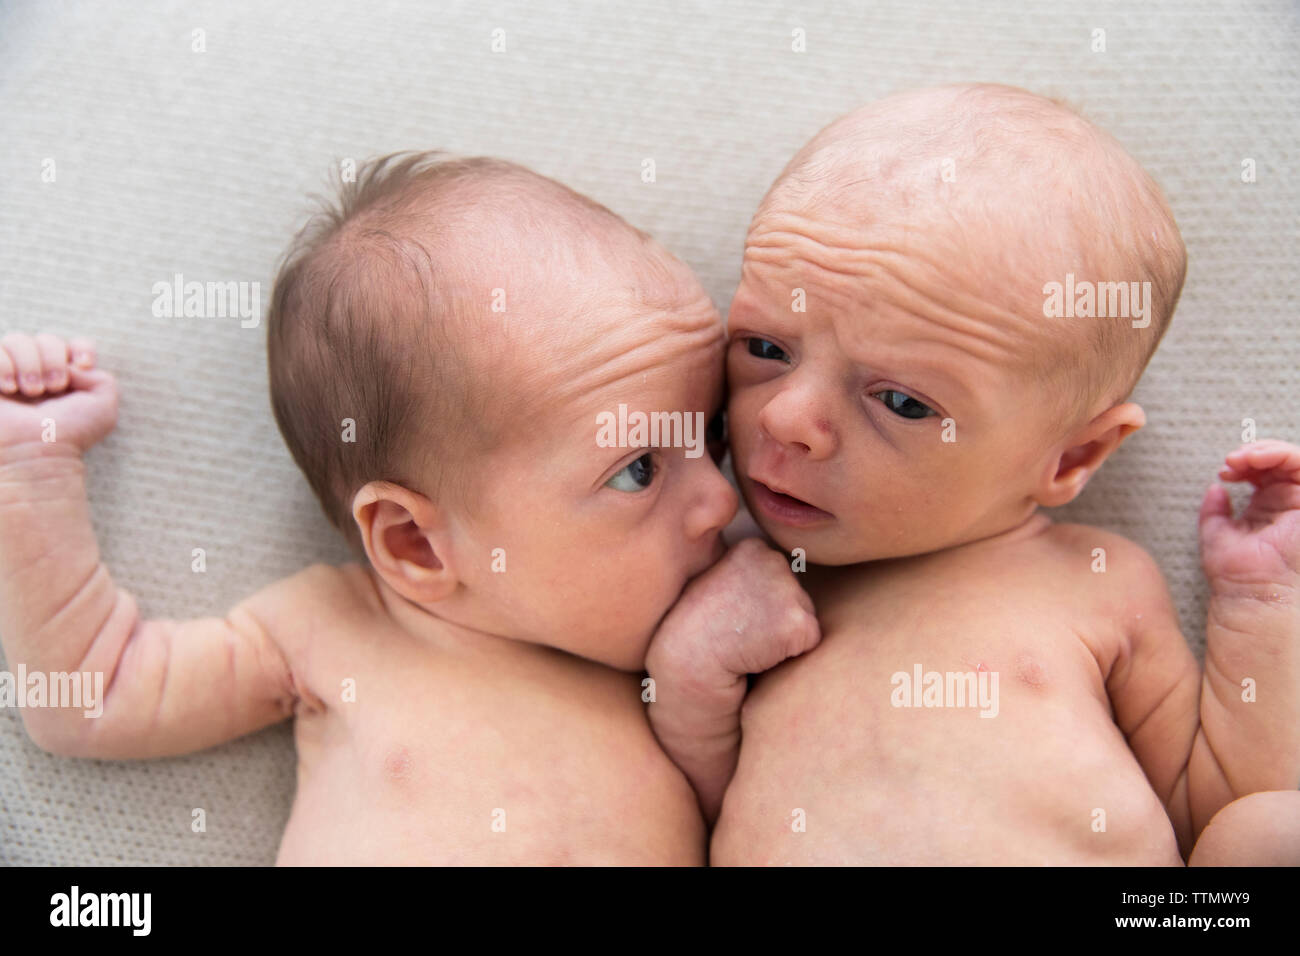 Tonto hermano gemelo del recién nacido chicas de sábana blanca Foto de stock